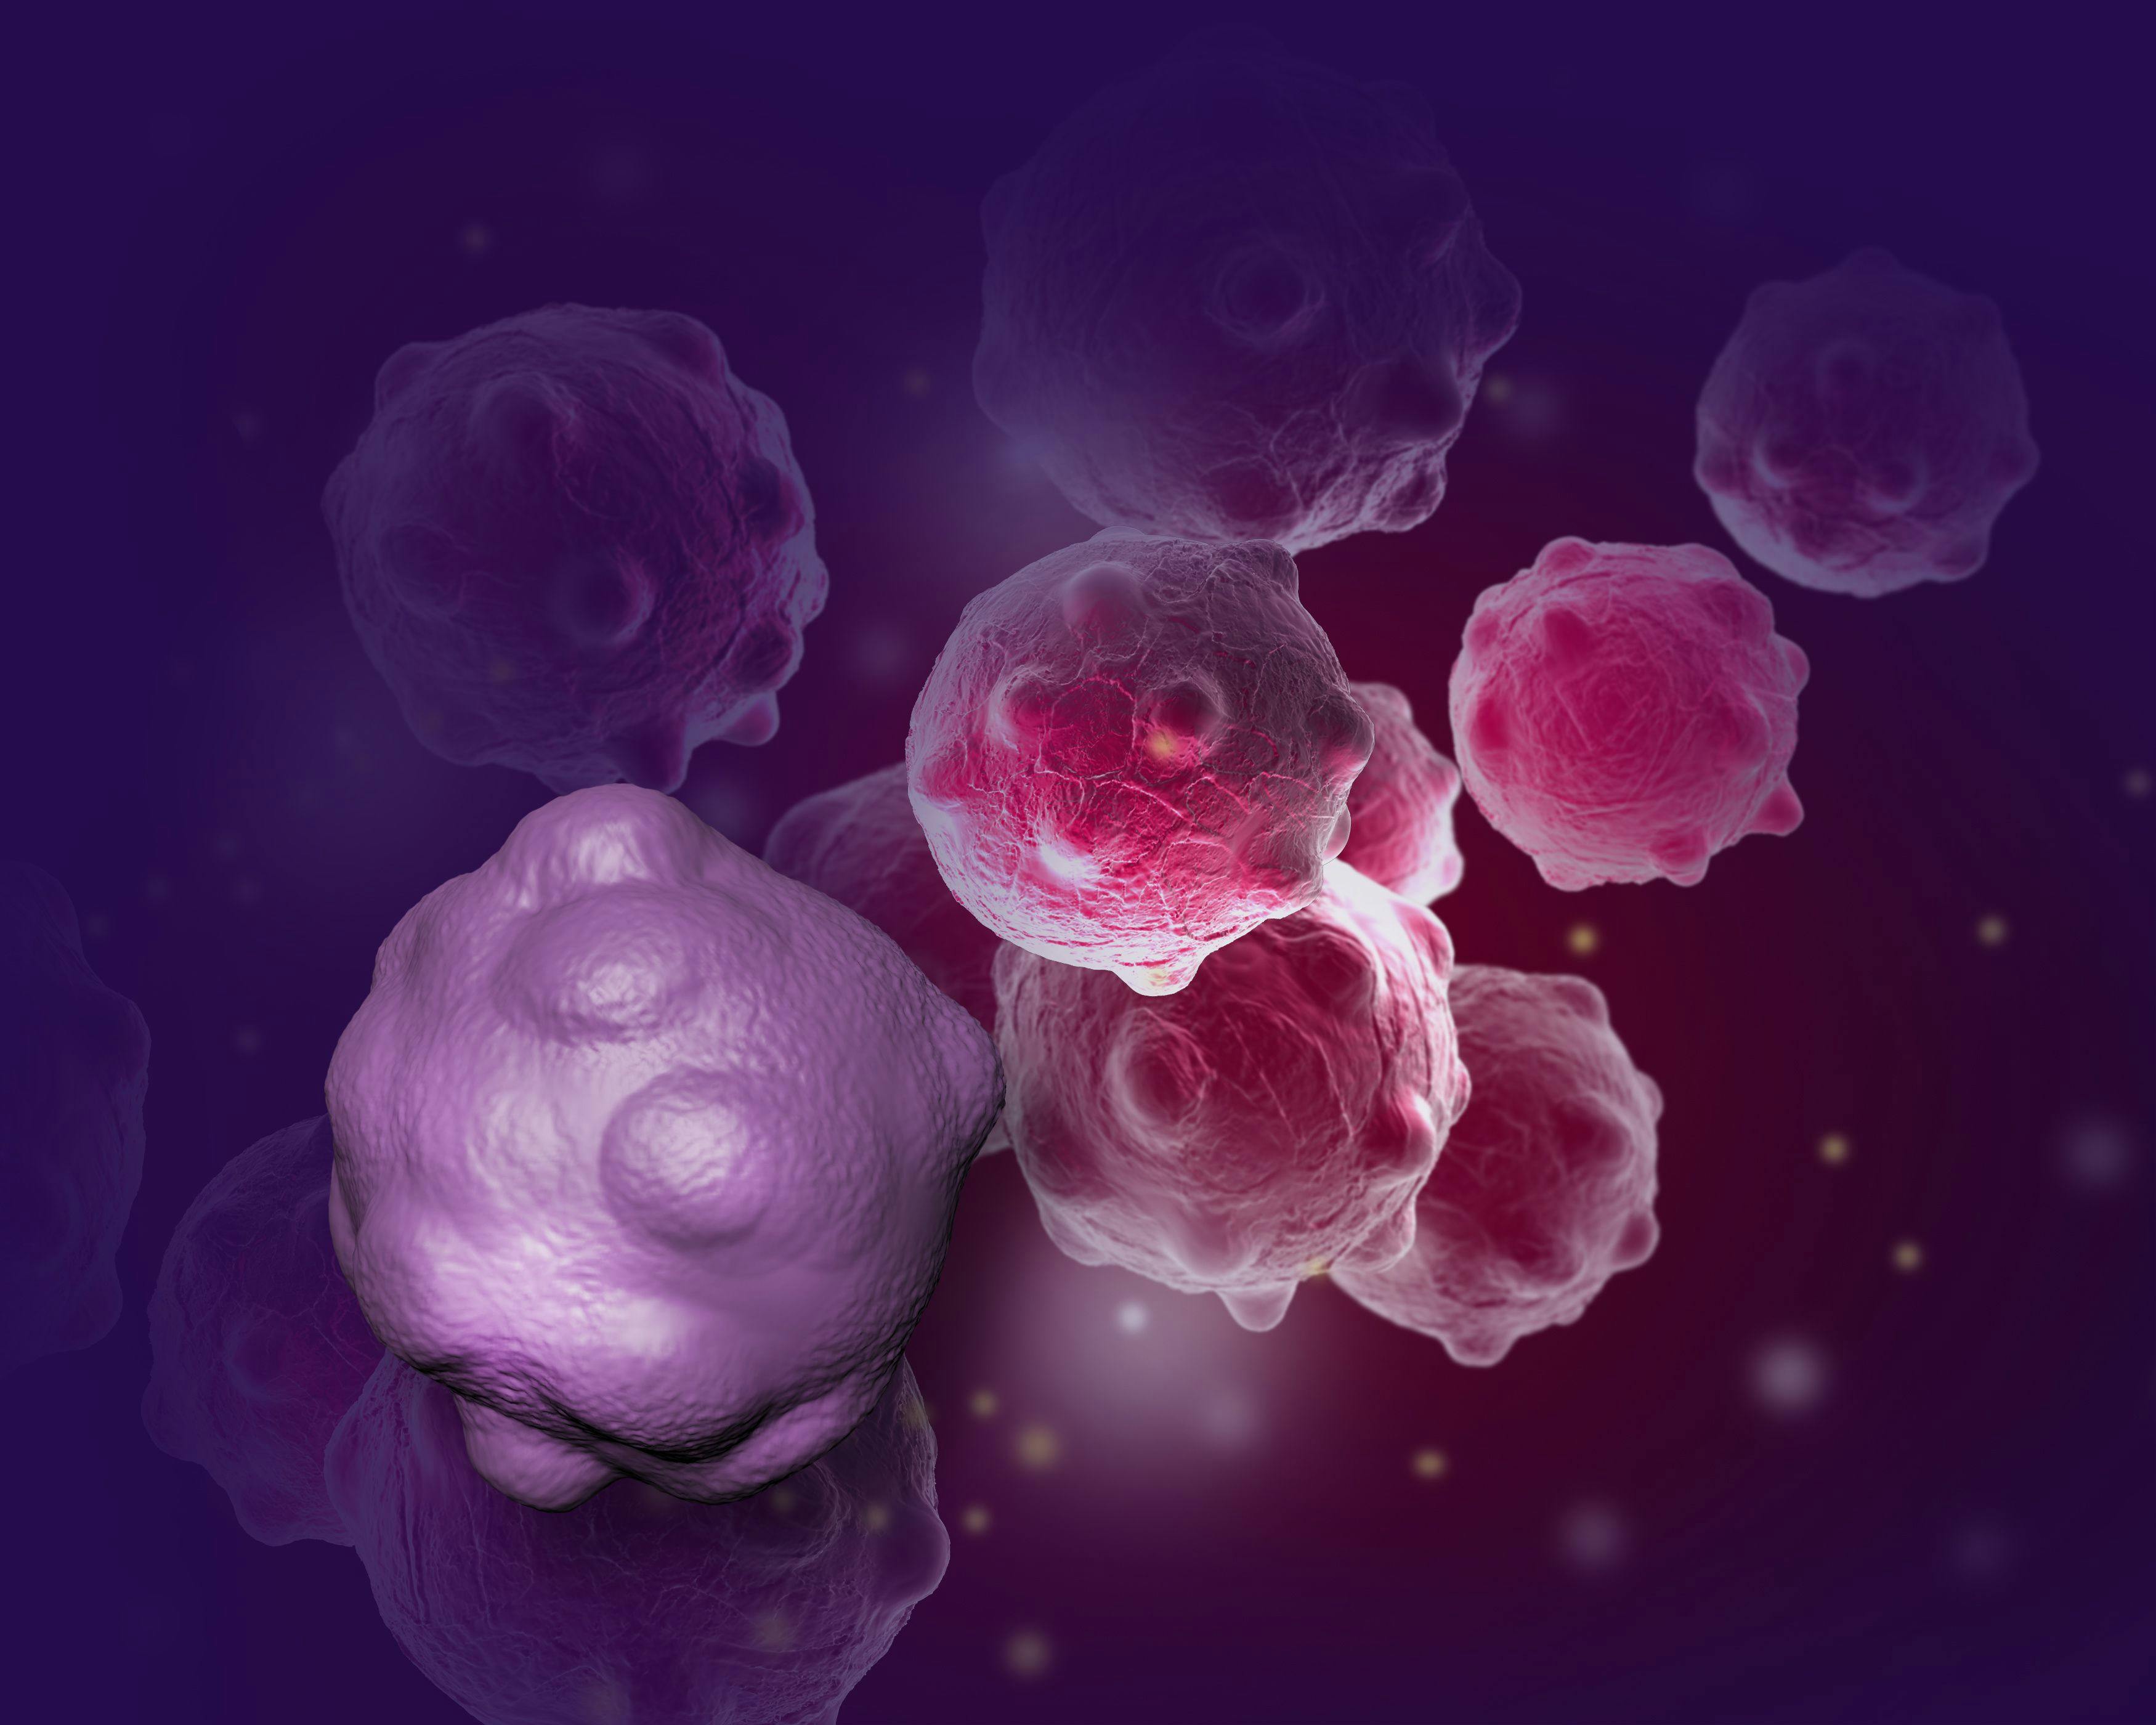 NRG1 Fusion–Driven Tumors